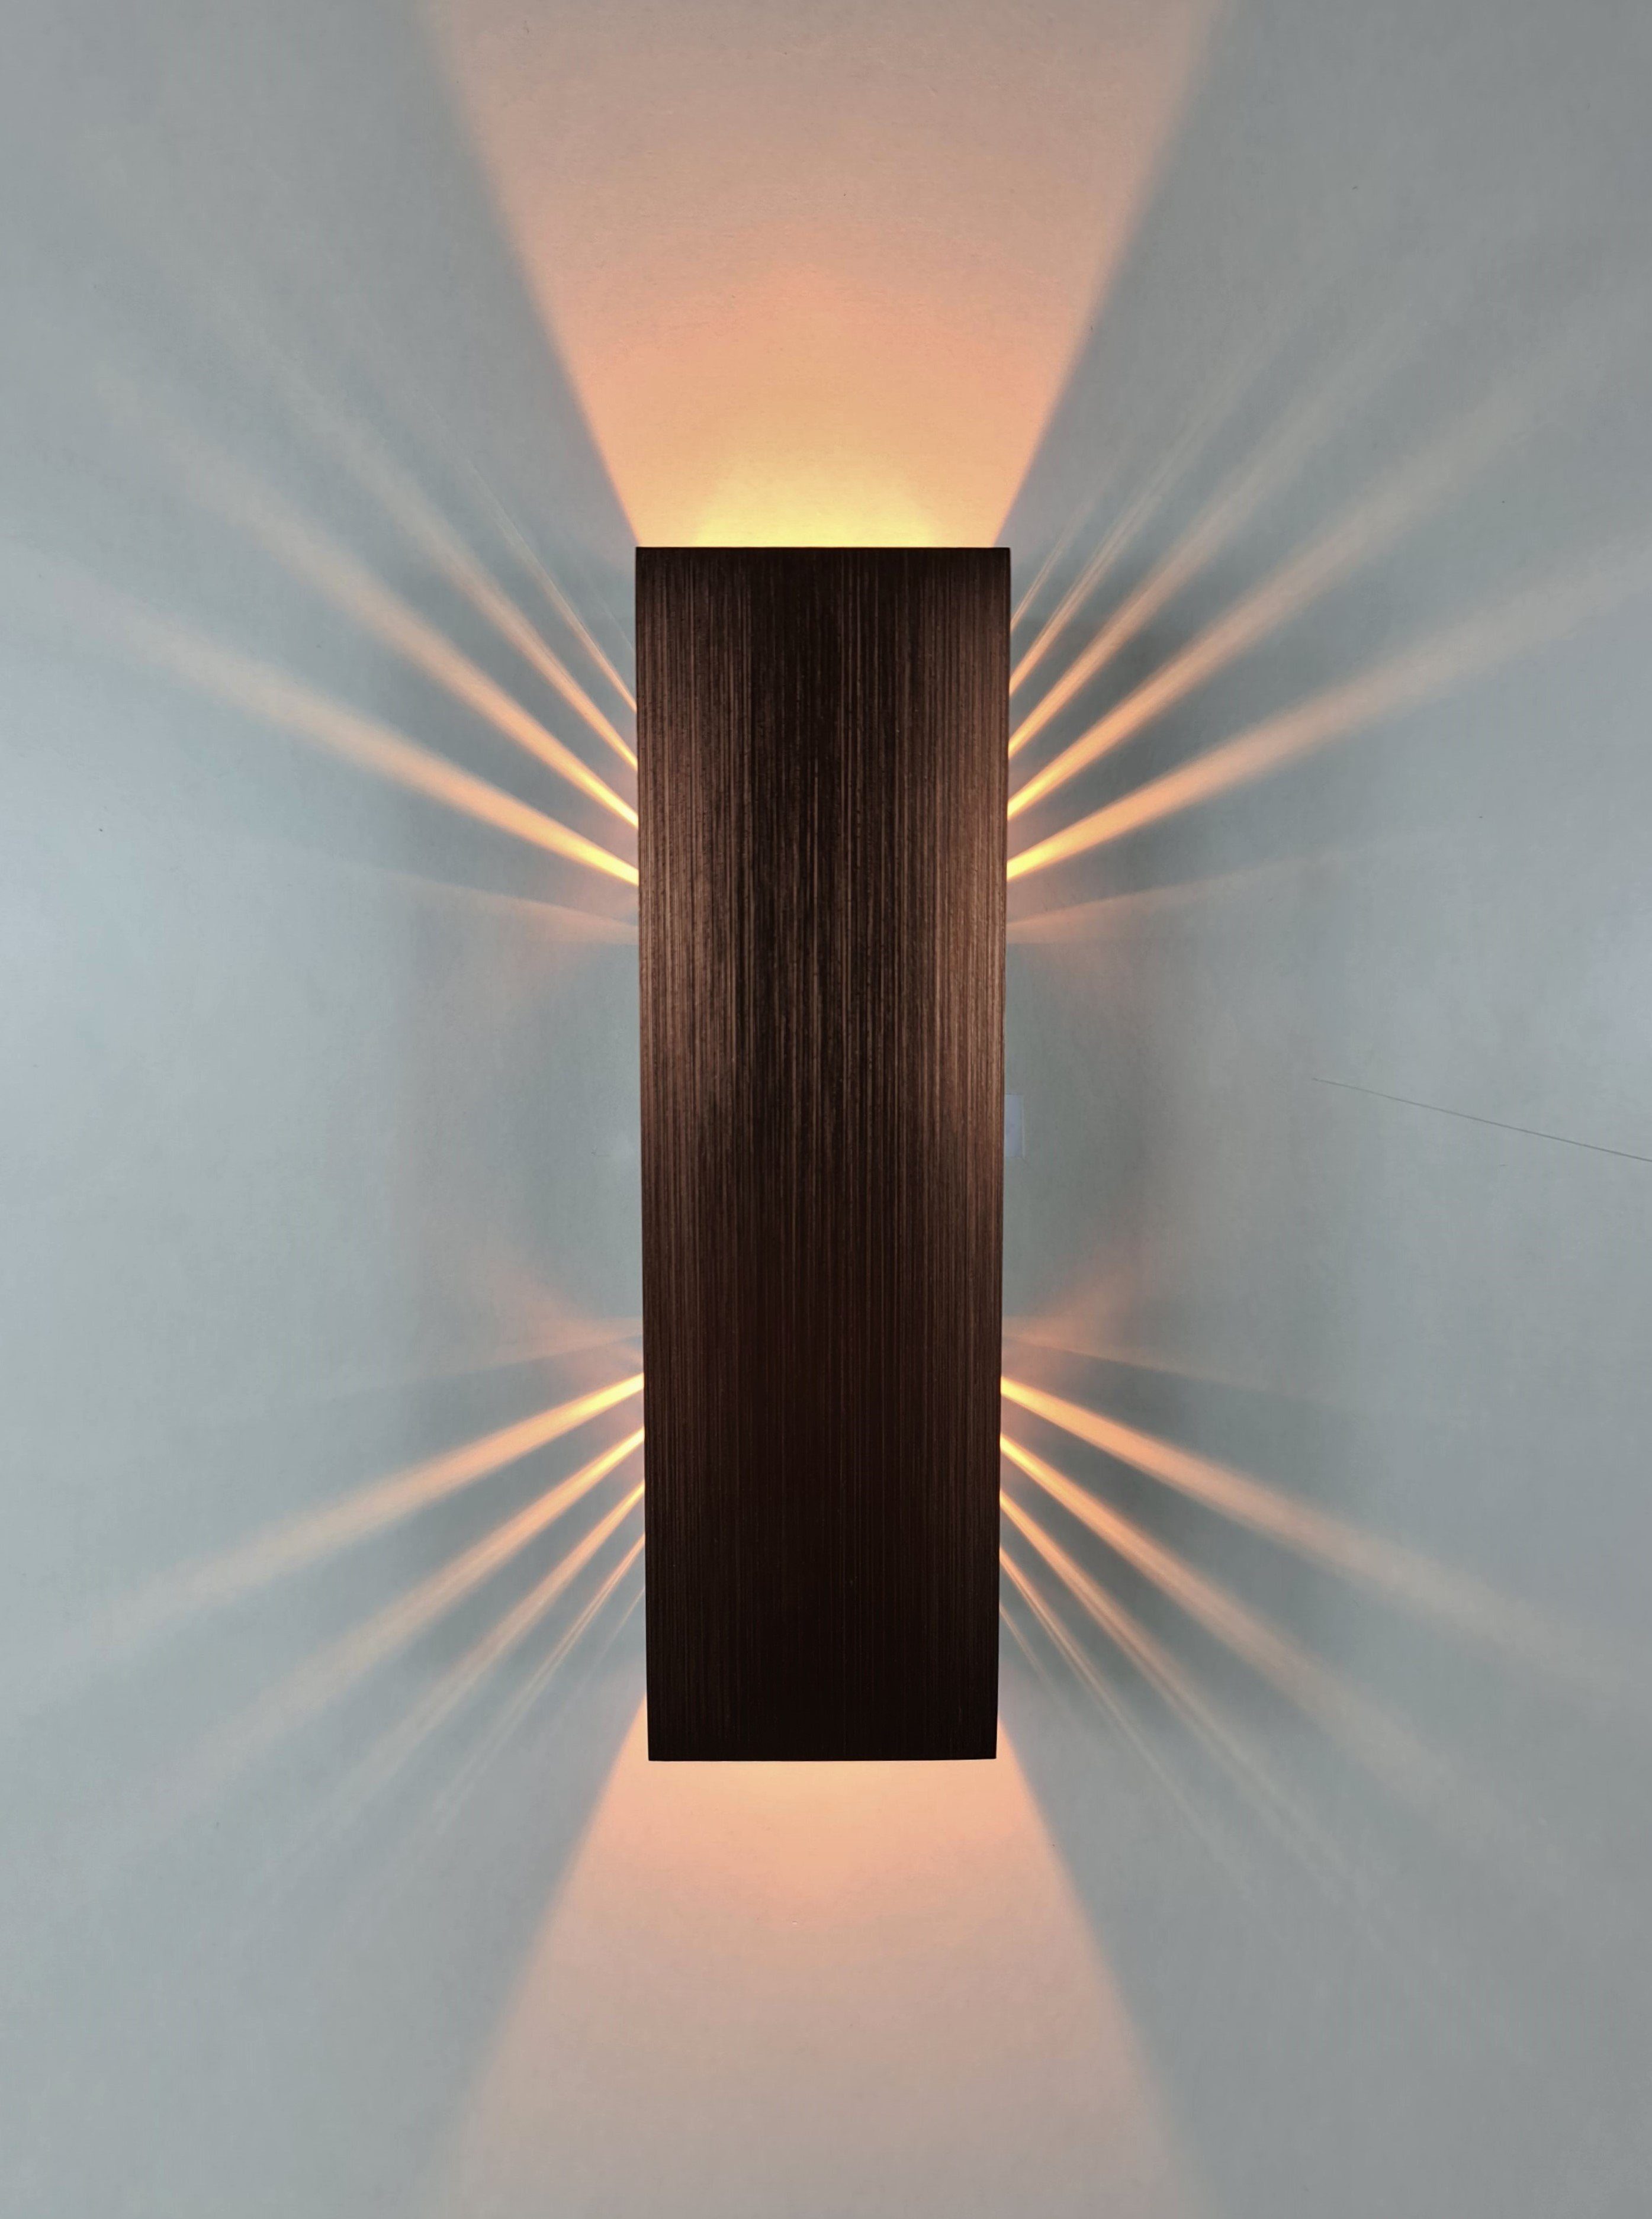 SpiceLED LED Wandleuchte Kupfer Edition, Warmweiß (2700 K), LED fest integriert, Warmweiß, 6 Watt, Lichtfarbe warmweiß, indirekte Beleuchtung mit Schatteneffekt, Up & Down Licht